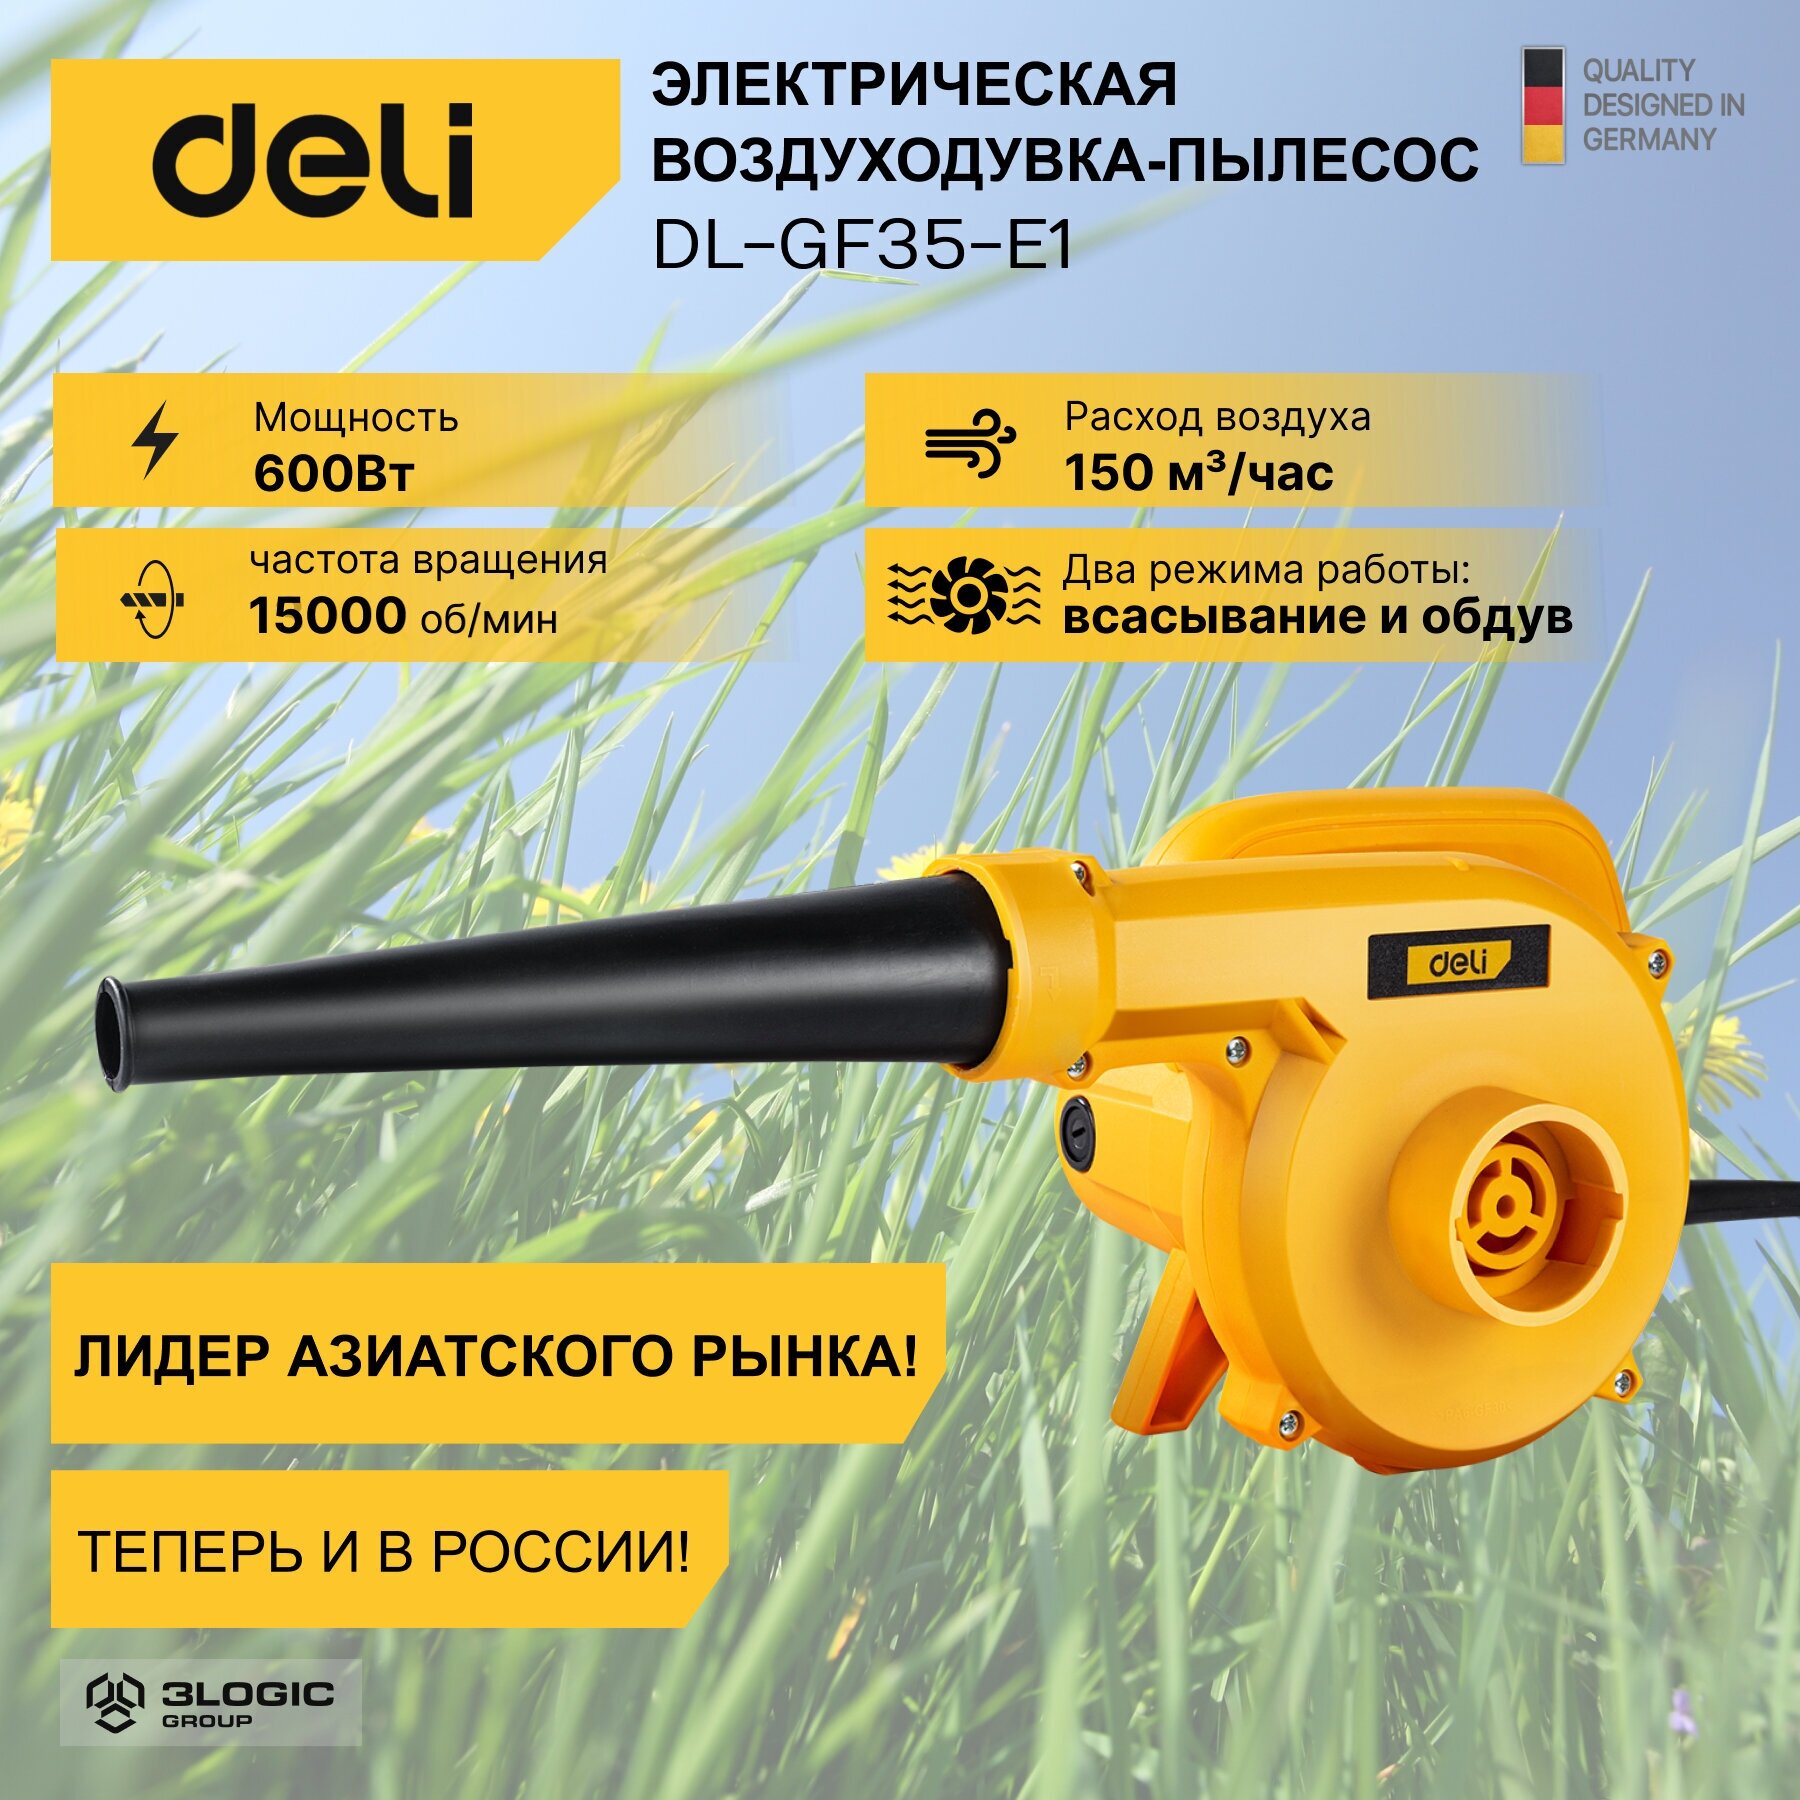 Садовая электрическая воздуходувка-пылесос Deli DL-GF35-E1 (600Вт, 2,5м3/мин,15000 об/мин)